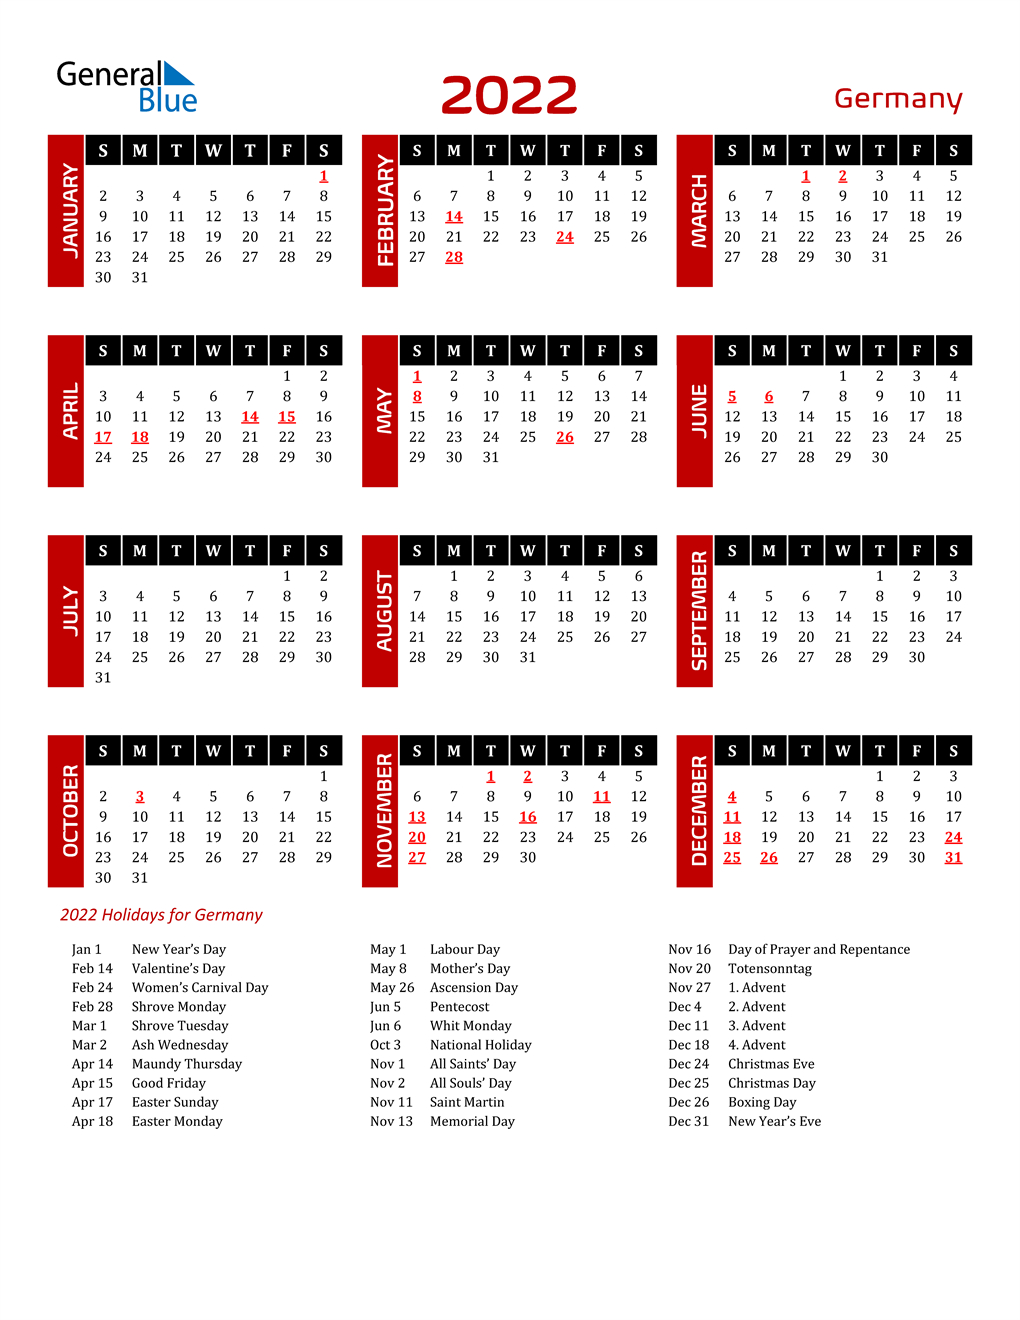 Telugu Calendar 2022 Germany  Telugu Calendar 2022